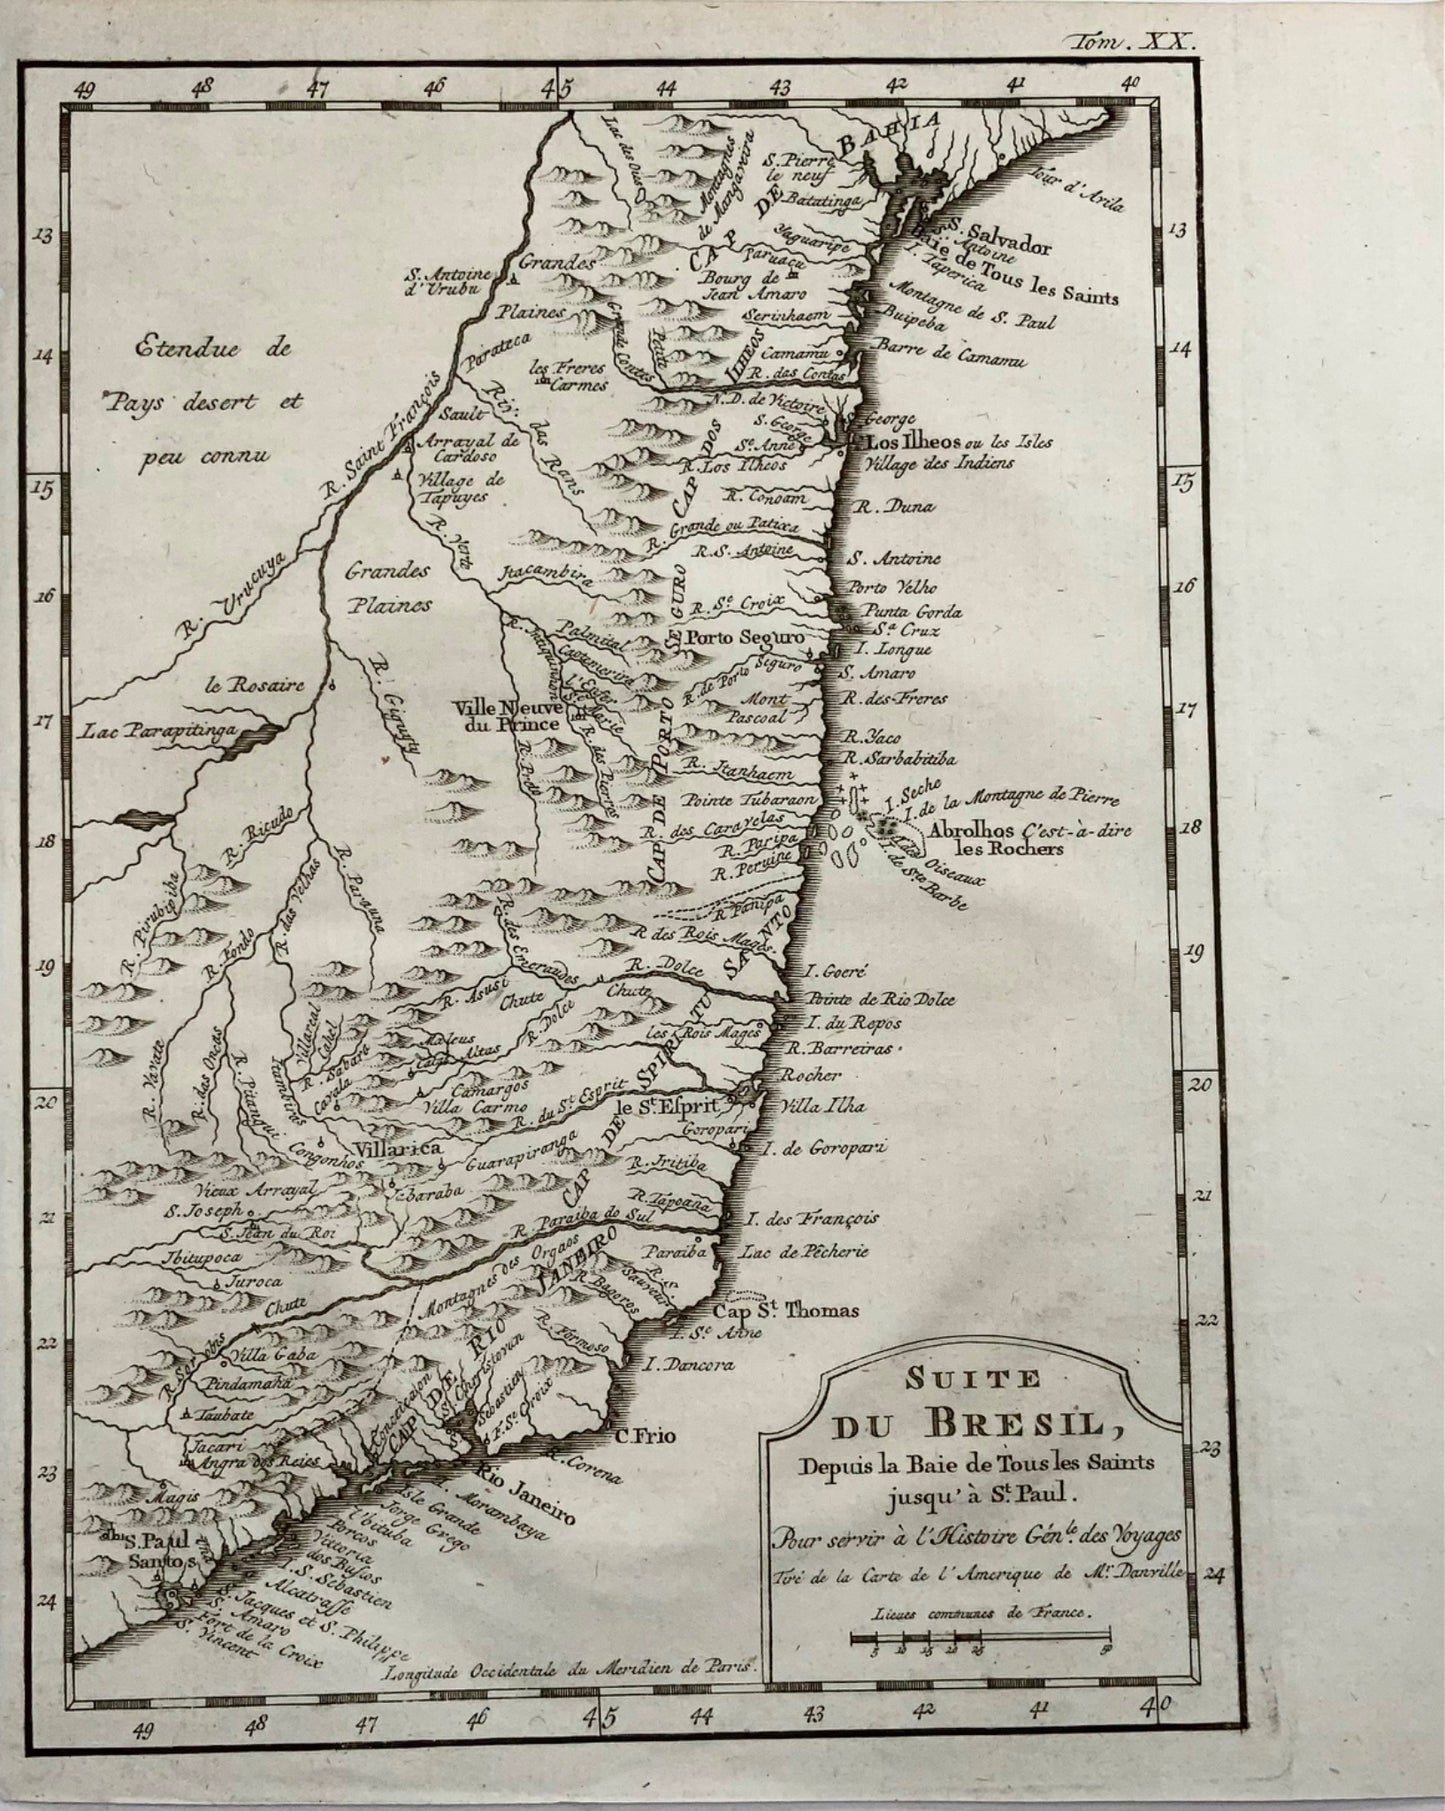 1757 Uruguay et Brésil, Jacques Bellin, 'Suite du Brésil', carte gravée